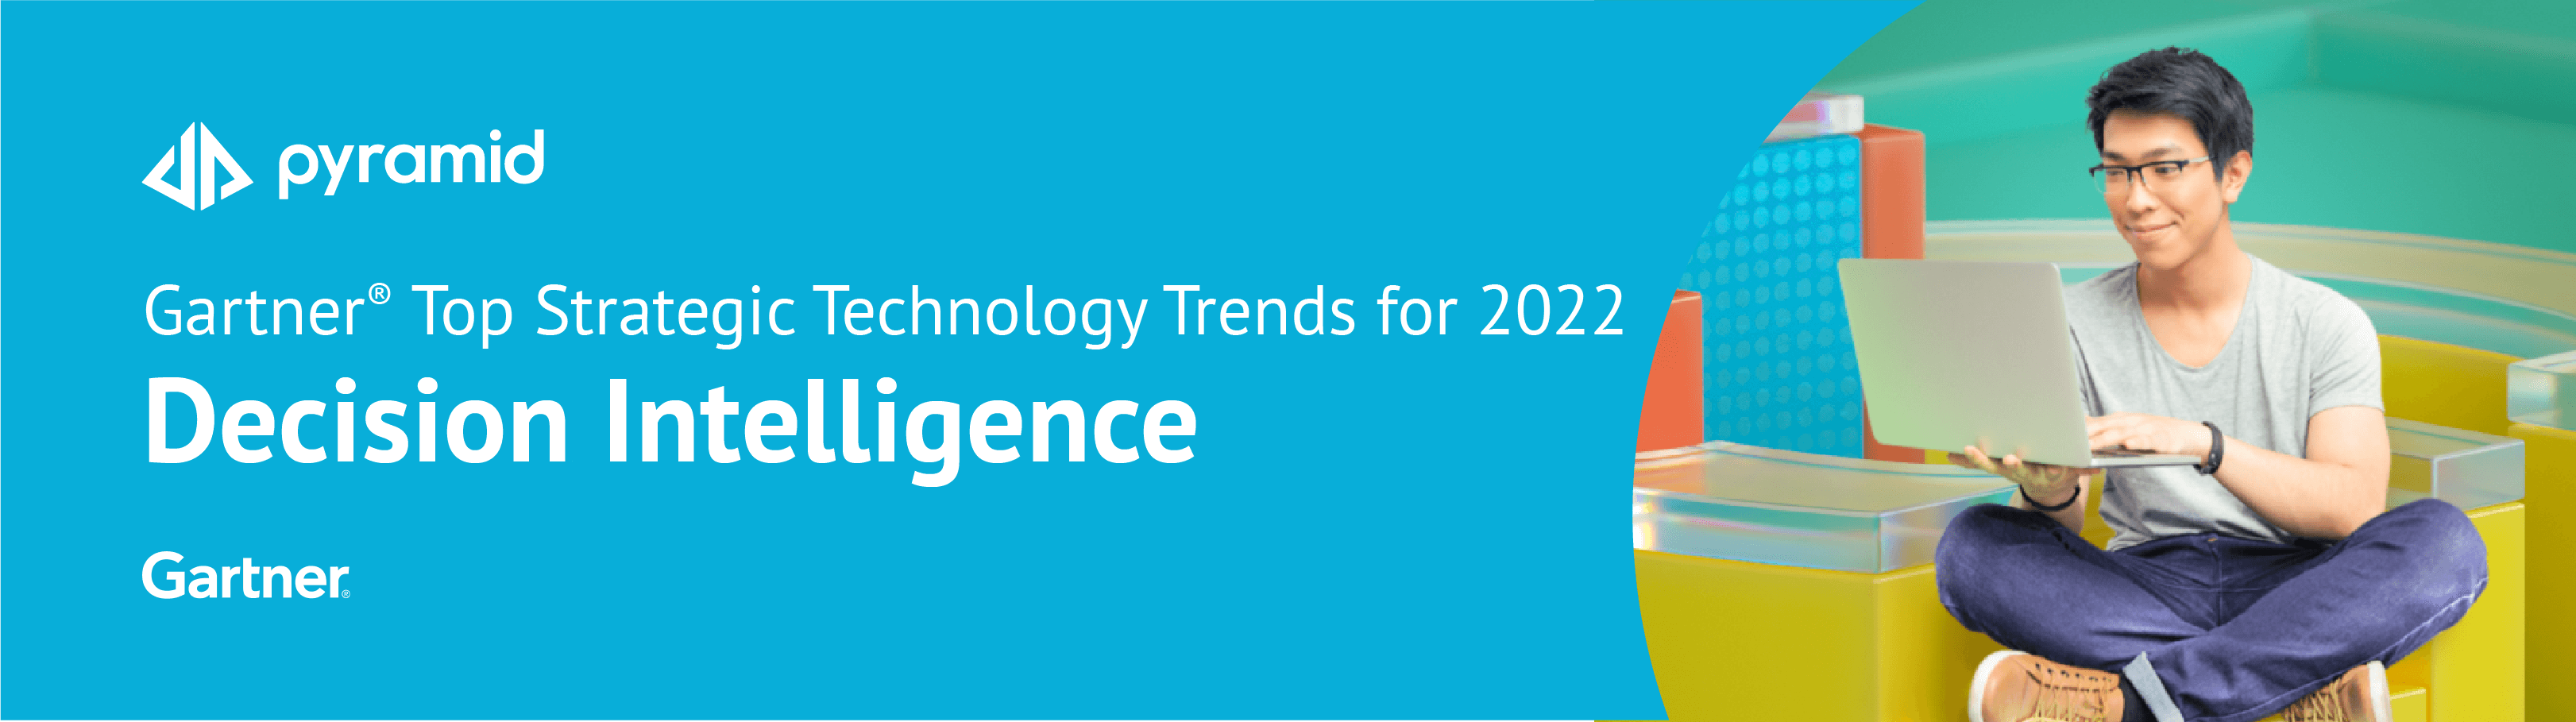 Gartner Top Strategic Technology Trends for 2022 - Decision Intelligence